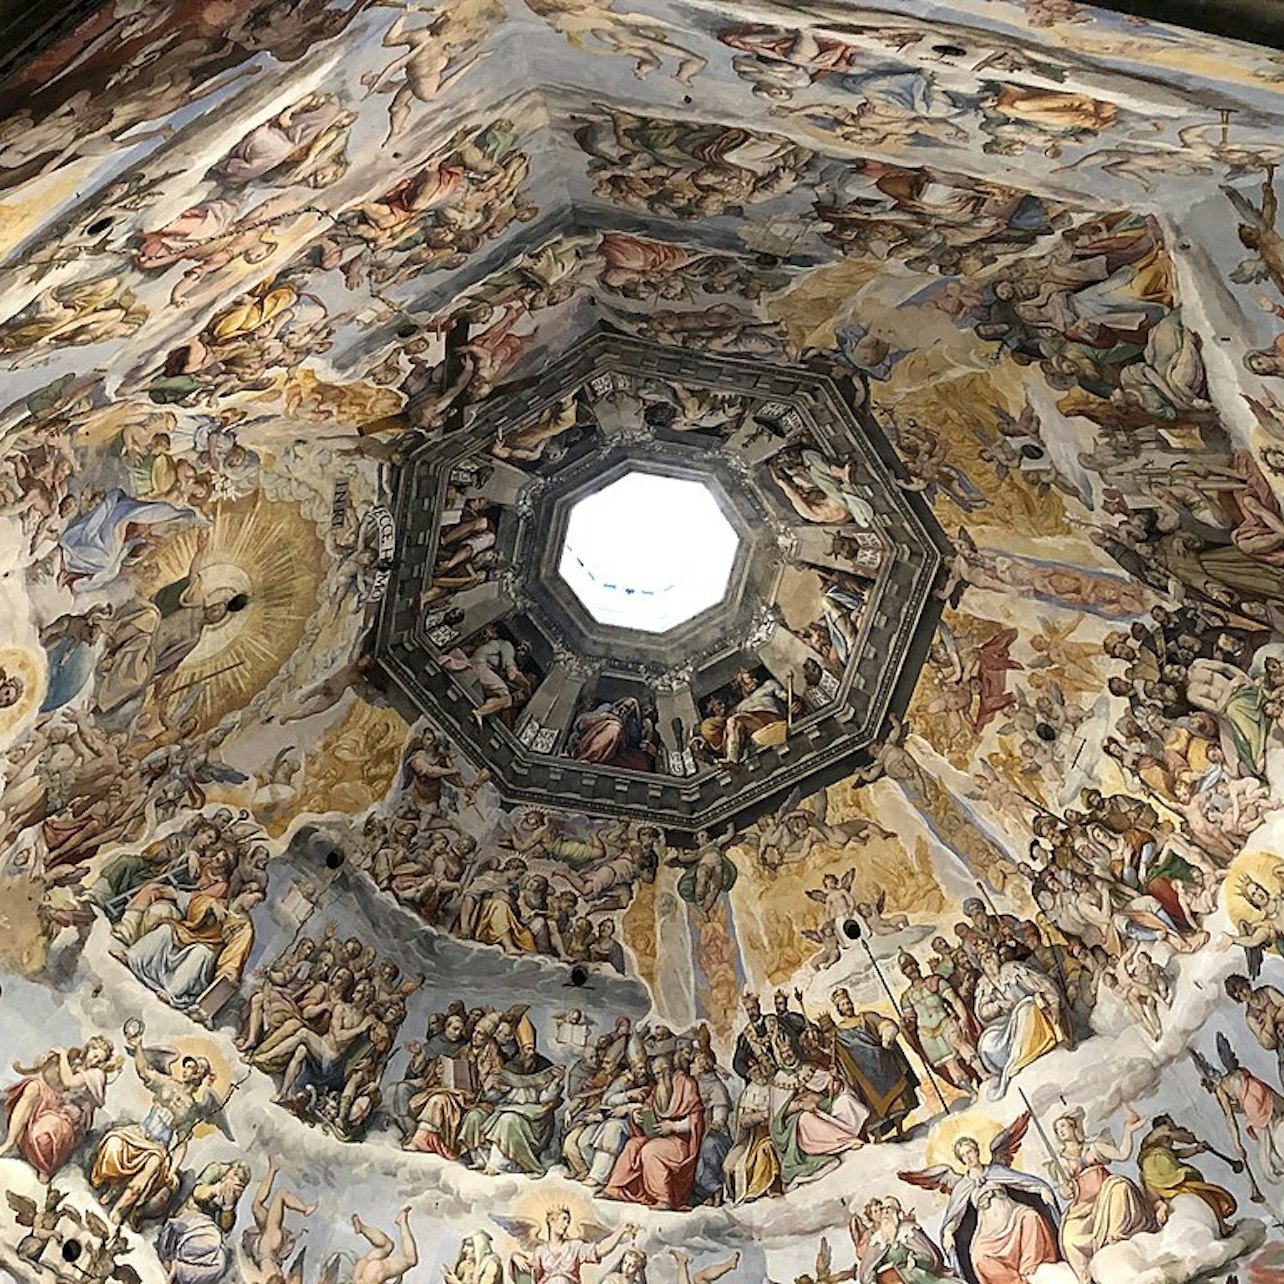 Cúpula de Brunelleschi y Catedral de Florencia: Entrada Premium y Sáltate la cola - Alojamientos en Florencia